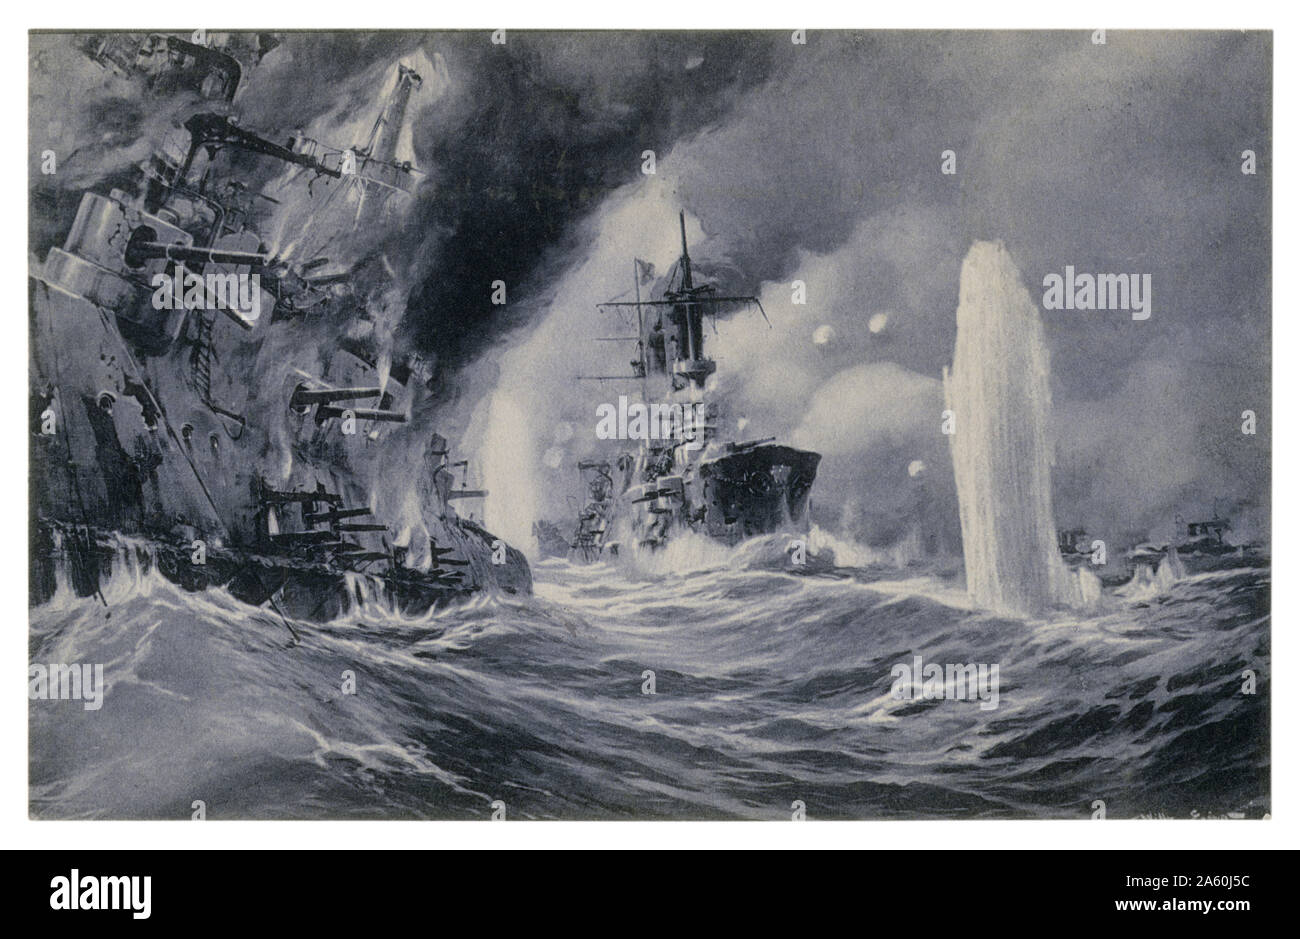 Carte postale historique allemand : flotte allemande est tiré sur une escadre russe des navires : un croiseur et un cuirassé. Le navire est en feu, la première guerre mondiale Banque D'Images